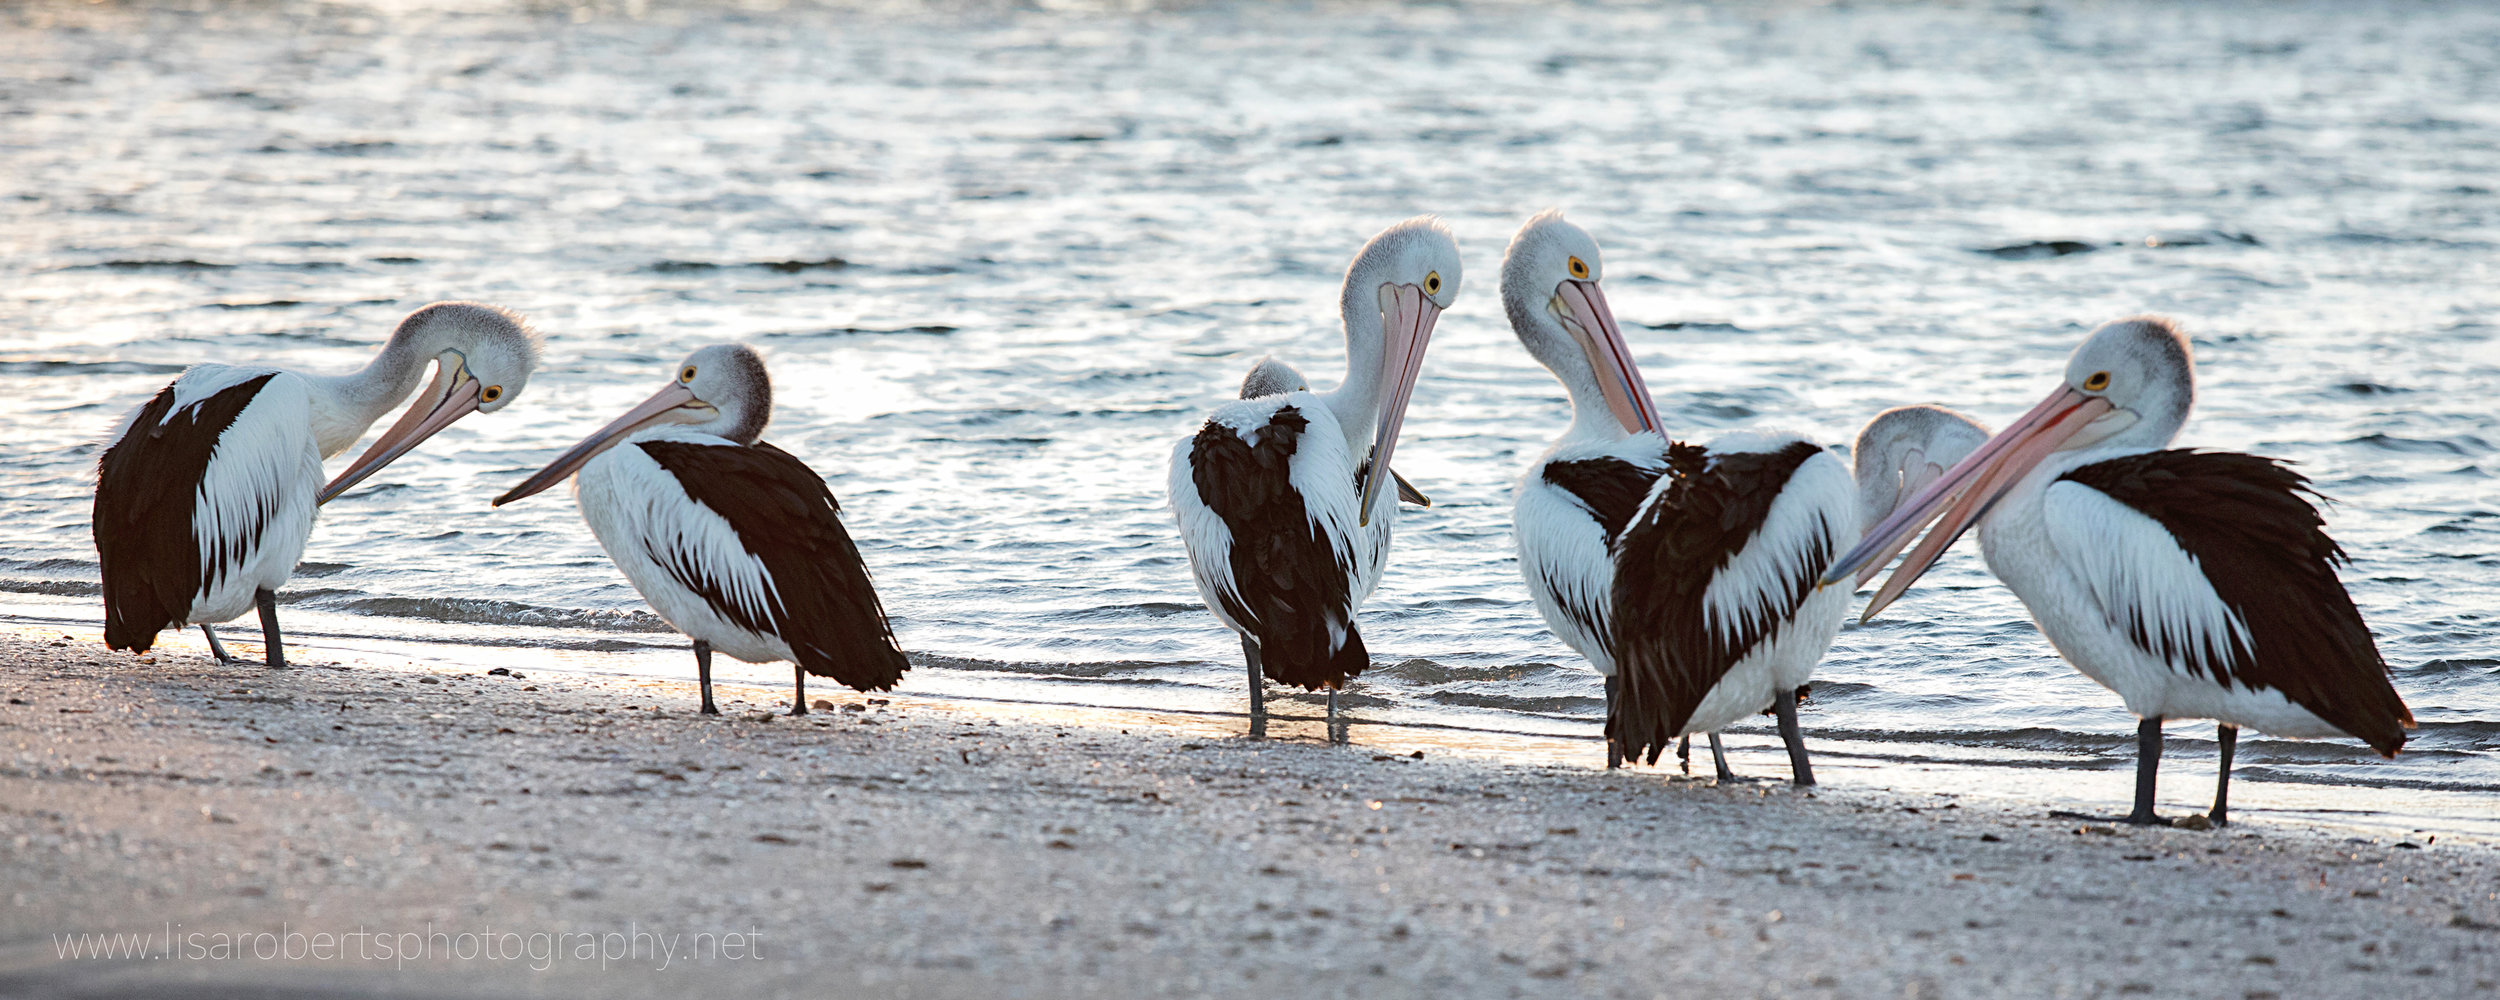  Pelicans preening, Smoky Bay, South Australia 